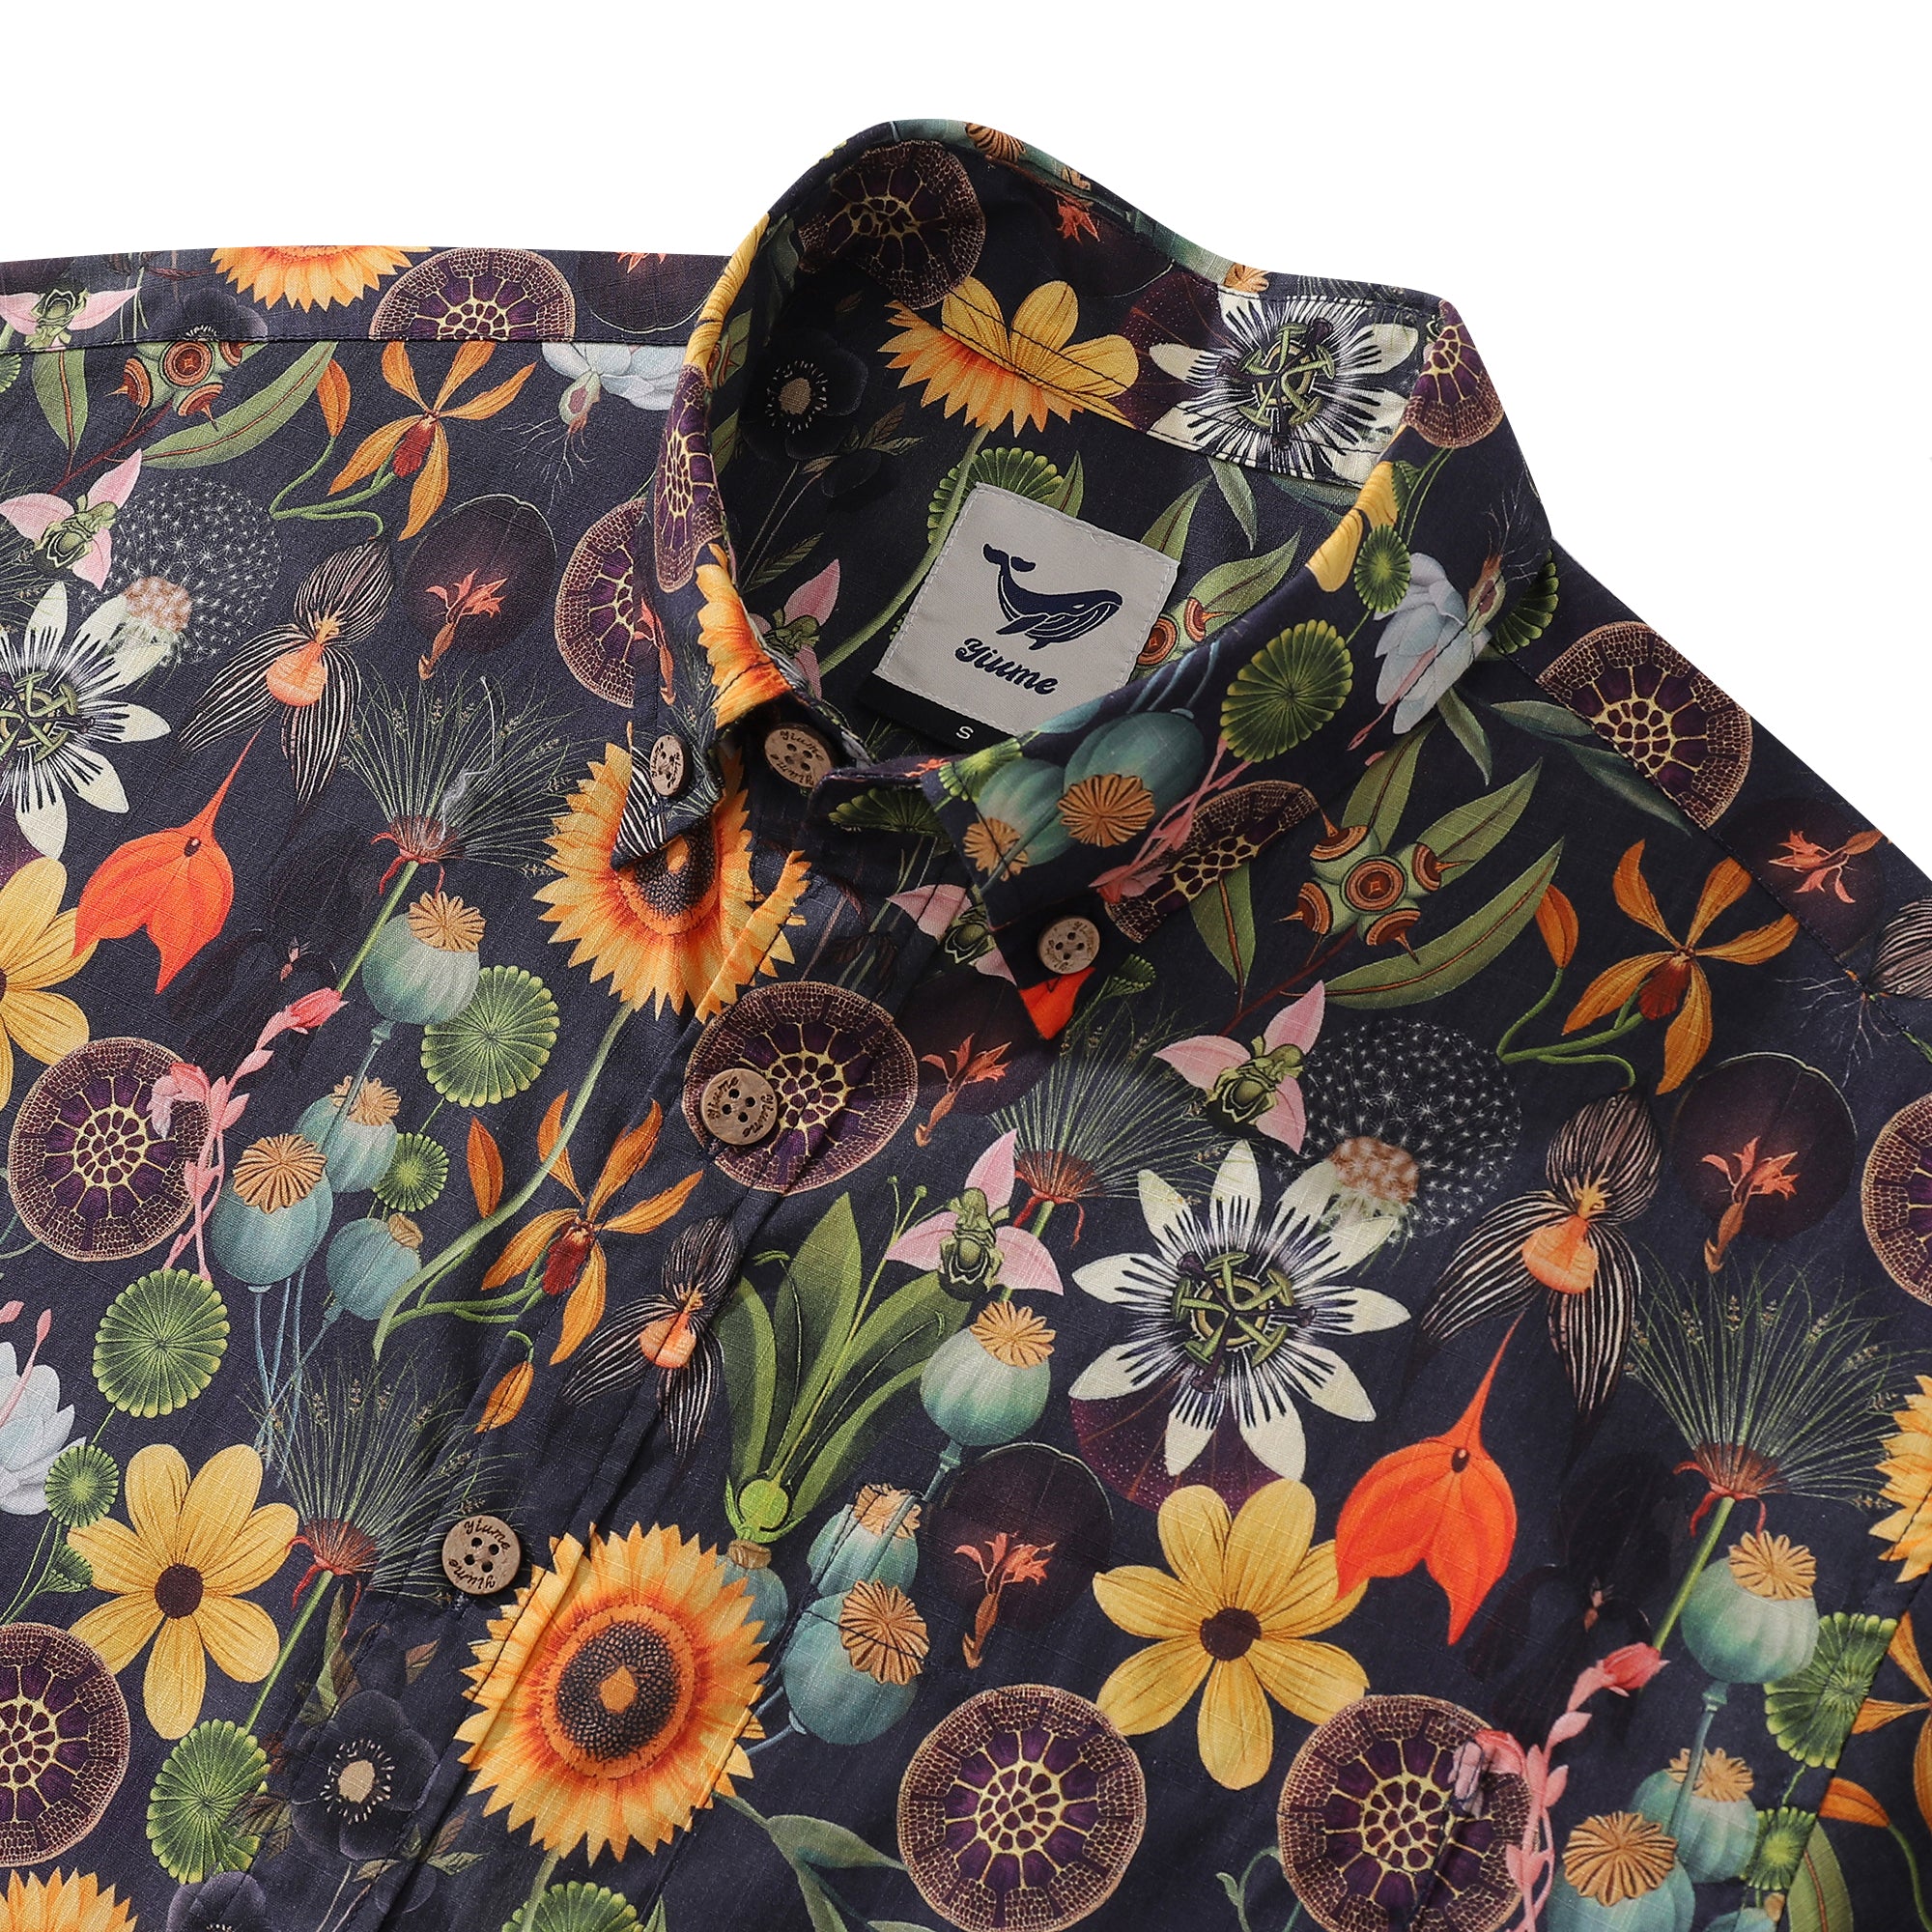 1930s Floral Hawaiian Shirt For Men Sunflower Serenity Cotton Button-down Short Sleeve Dress Shirt